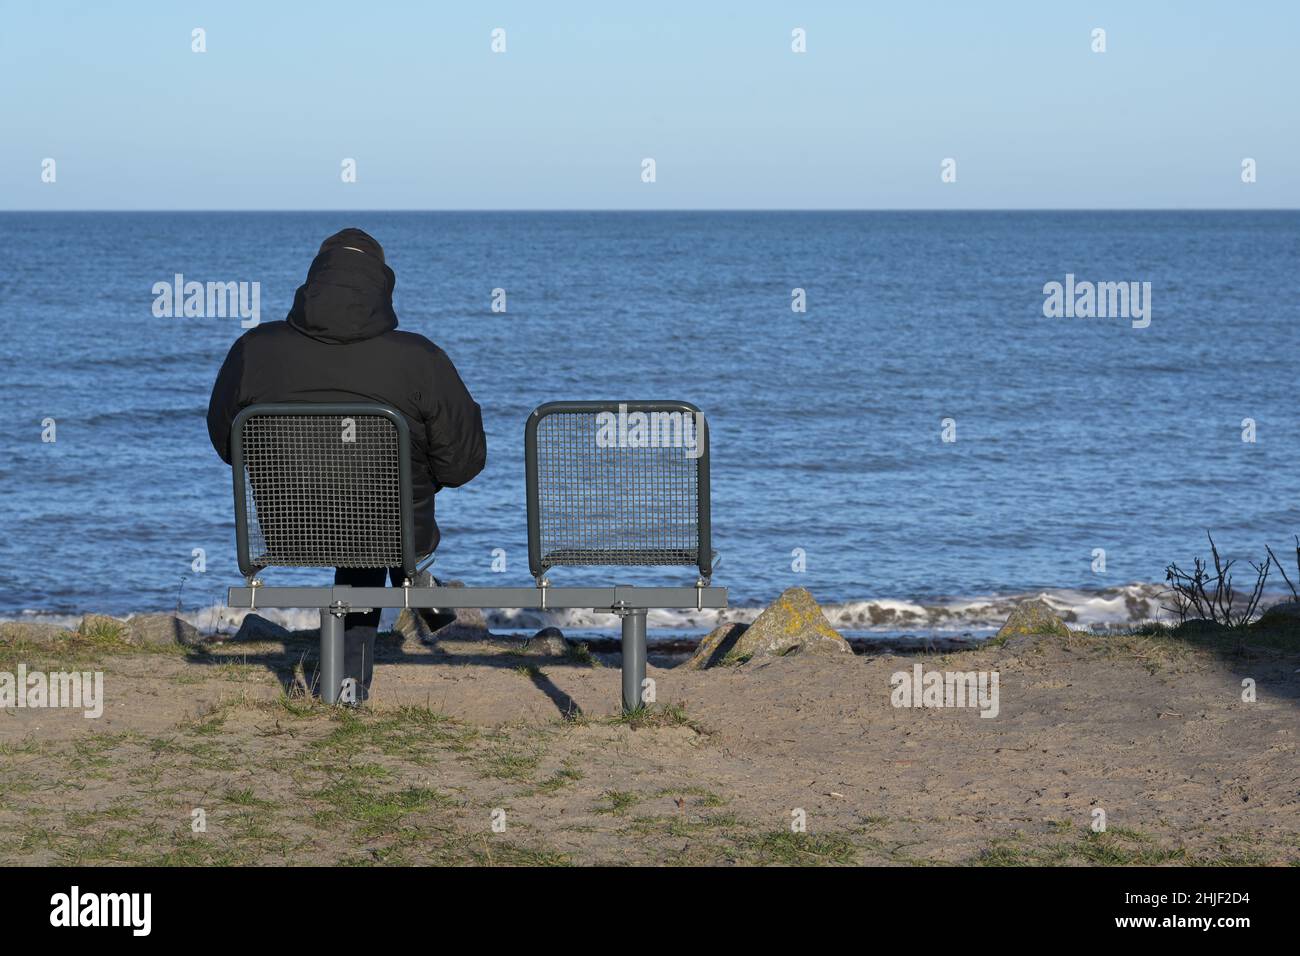 Hombre soltero con una chaqueta cálida y oscura desde atrás sentado junto a una silla vacía en la orilla del mar mirando sobre el agua azul hasta el horizonte, concepto para r Foto de stock